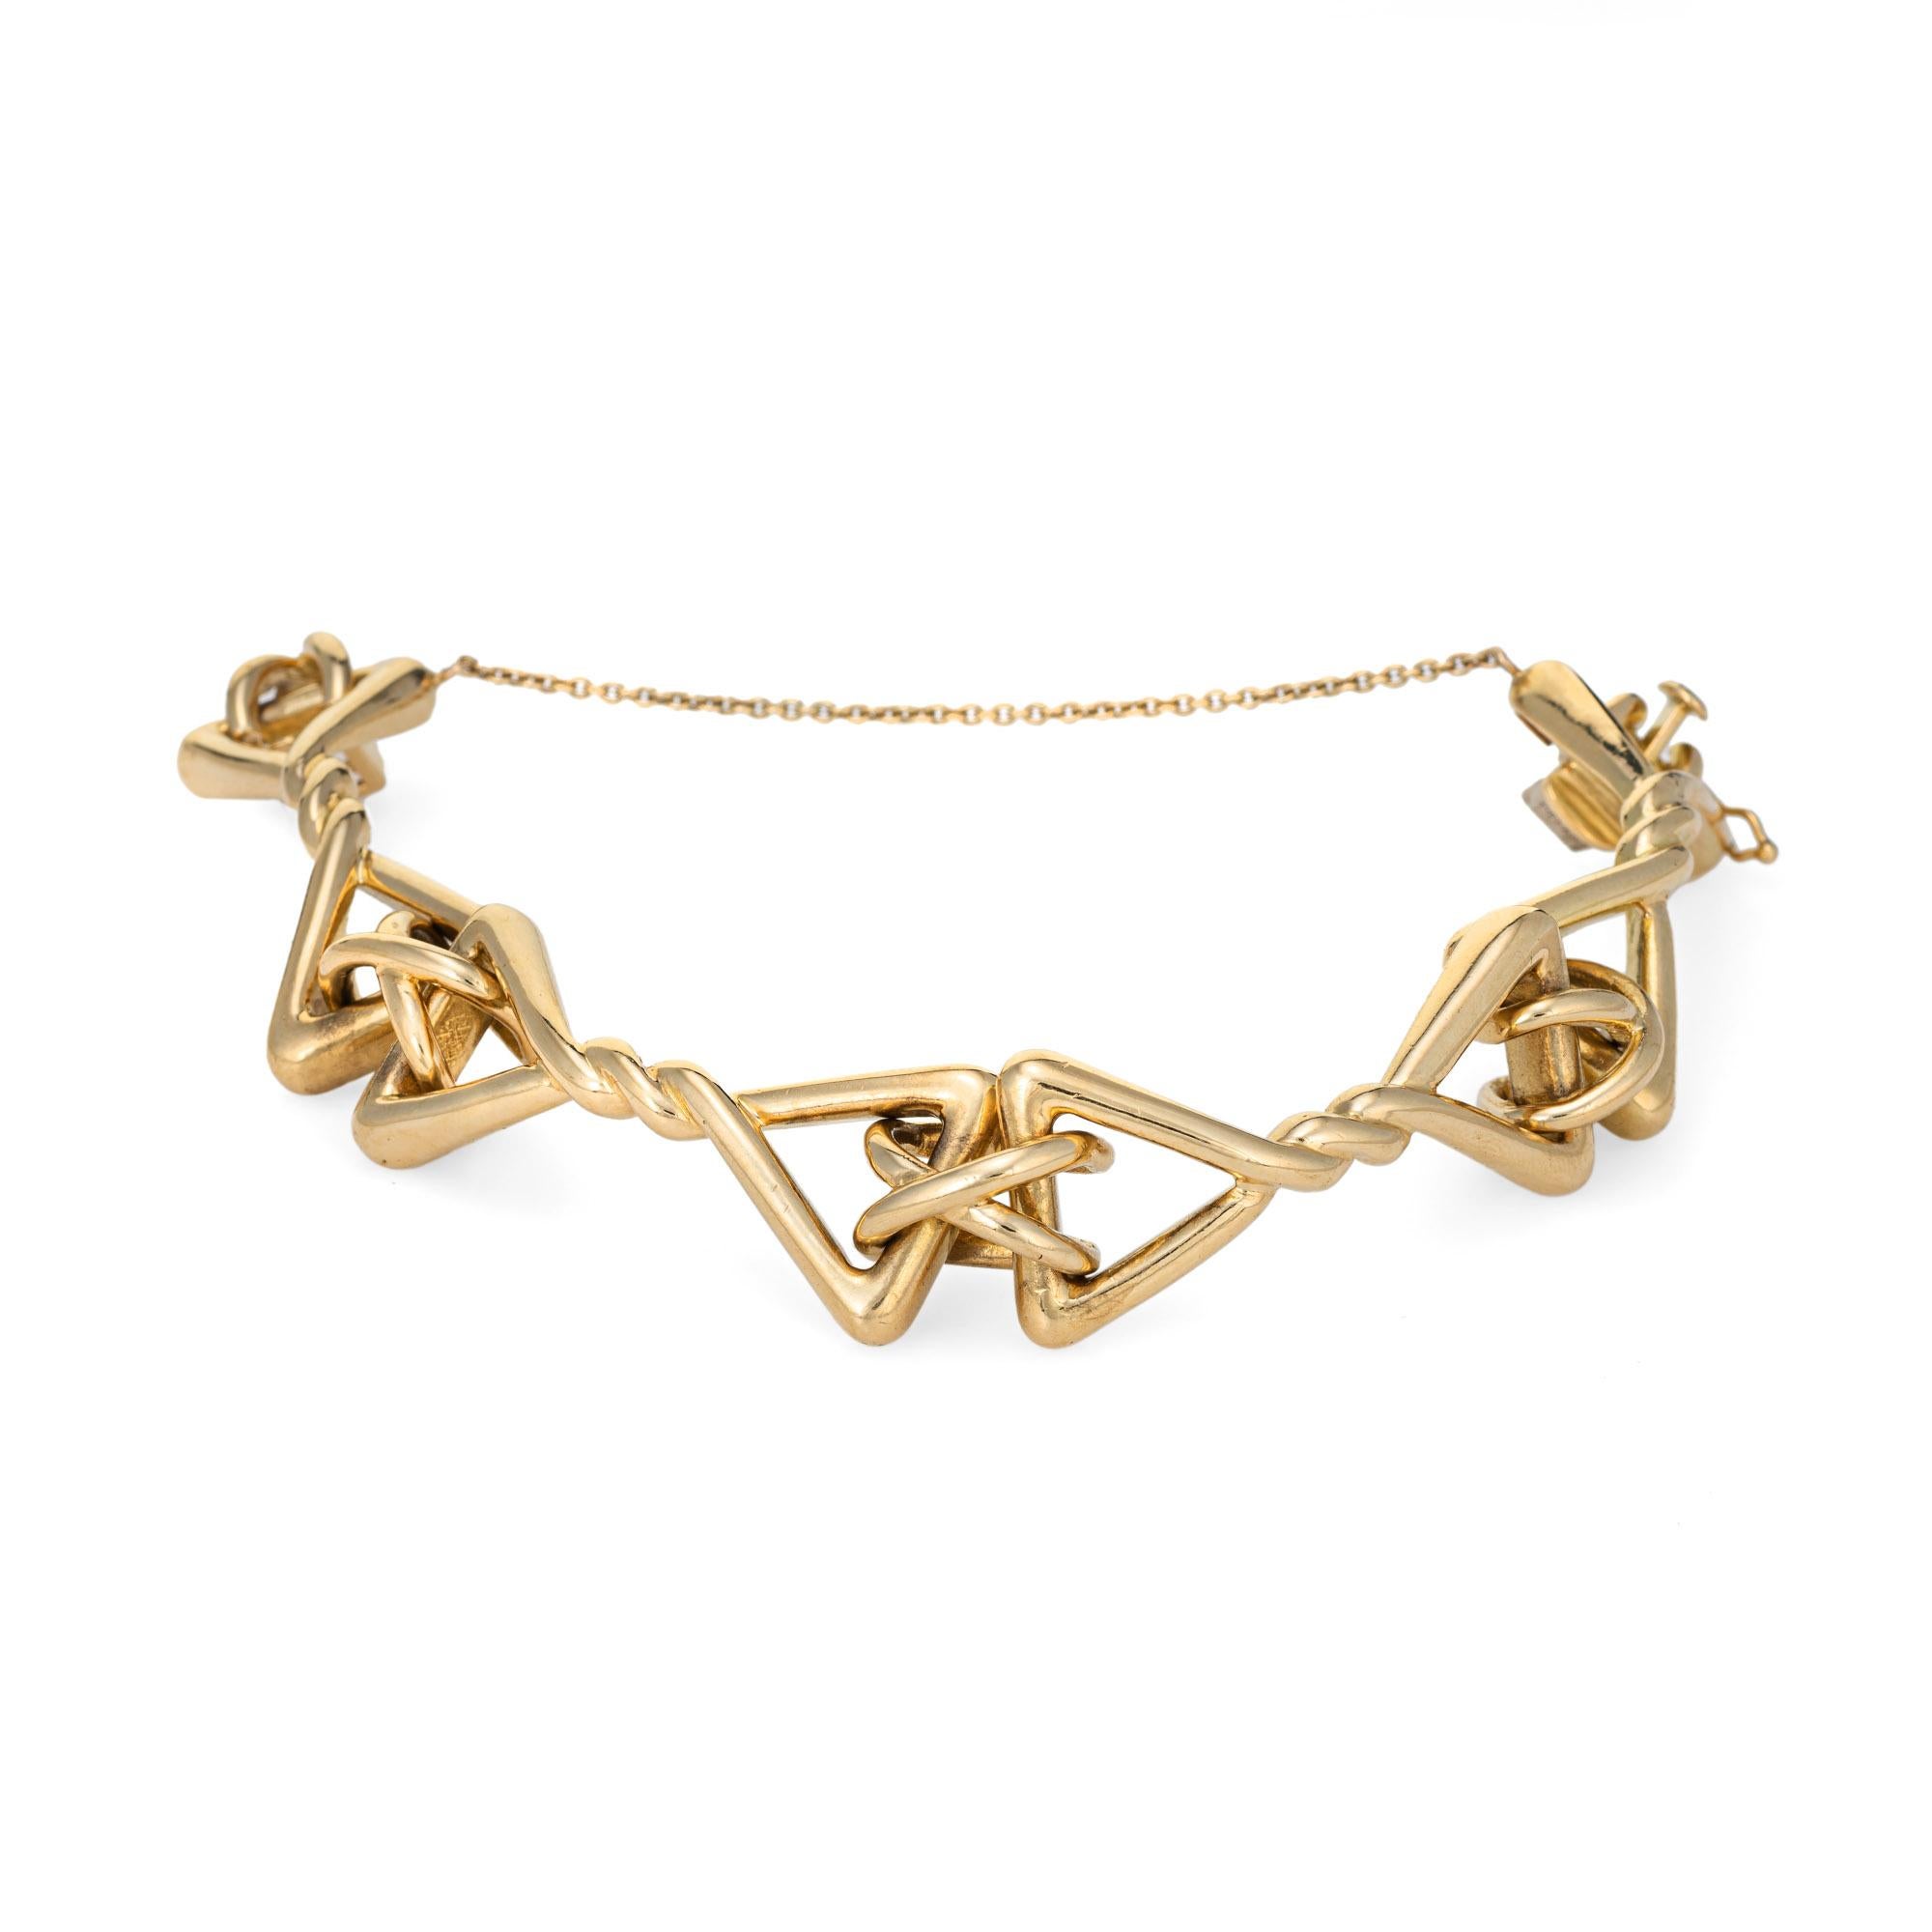 Élégant bracelet vintage Tiffany & By en or jaune 18 carats (circa 1960s).  

Ce bracelet massif est un classique de Tiffany, avec des maillons torsadés triangulaires reliés à des maillons croisés plus petits. Pesant 51.1 grammes, le bracelet offre